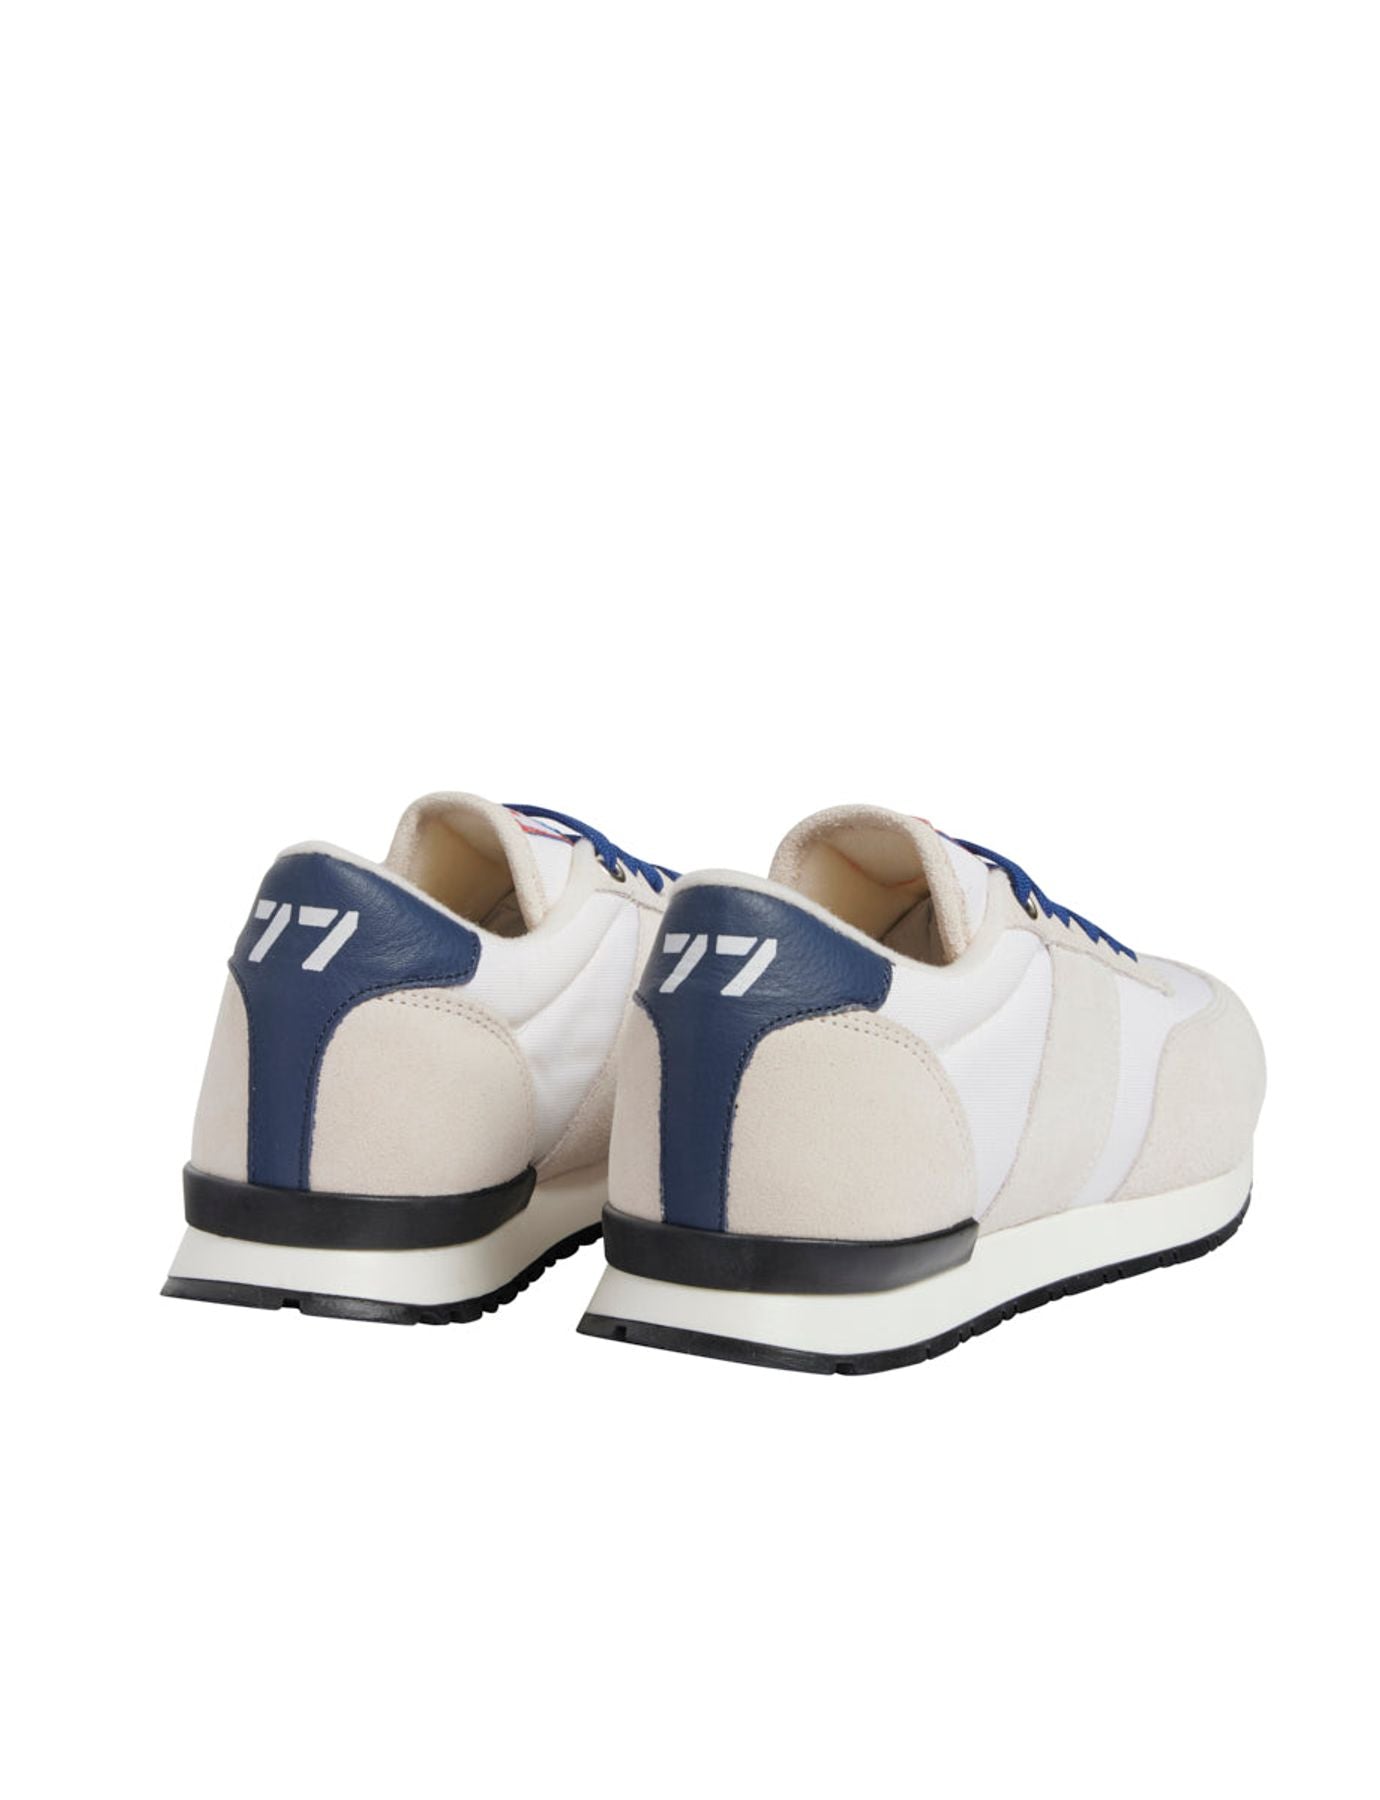 sneakers-quot-77-quot-uzs-x-ines-de-la-fressange-unisex-white-beige-blue